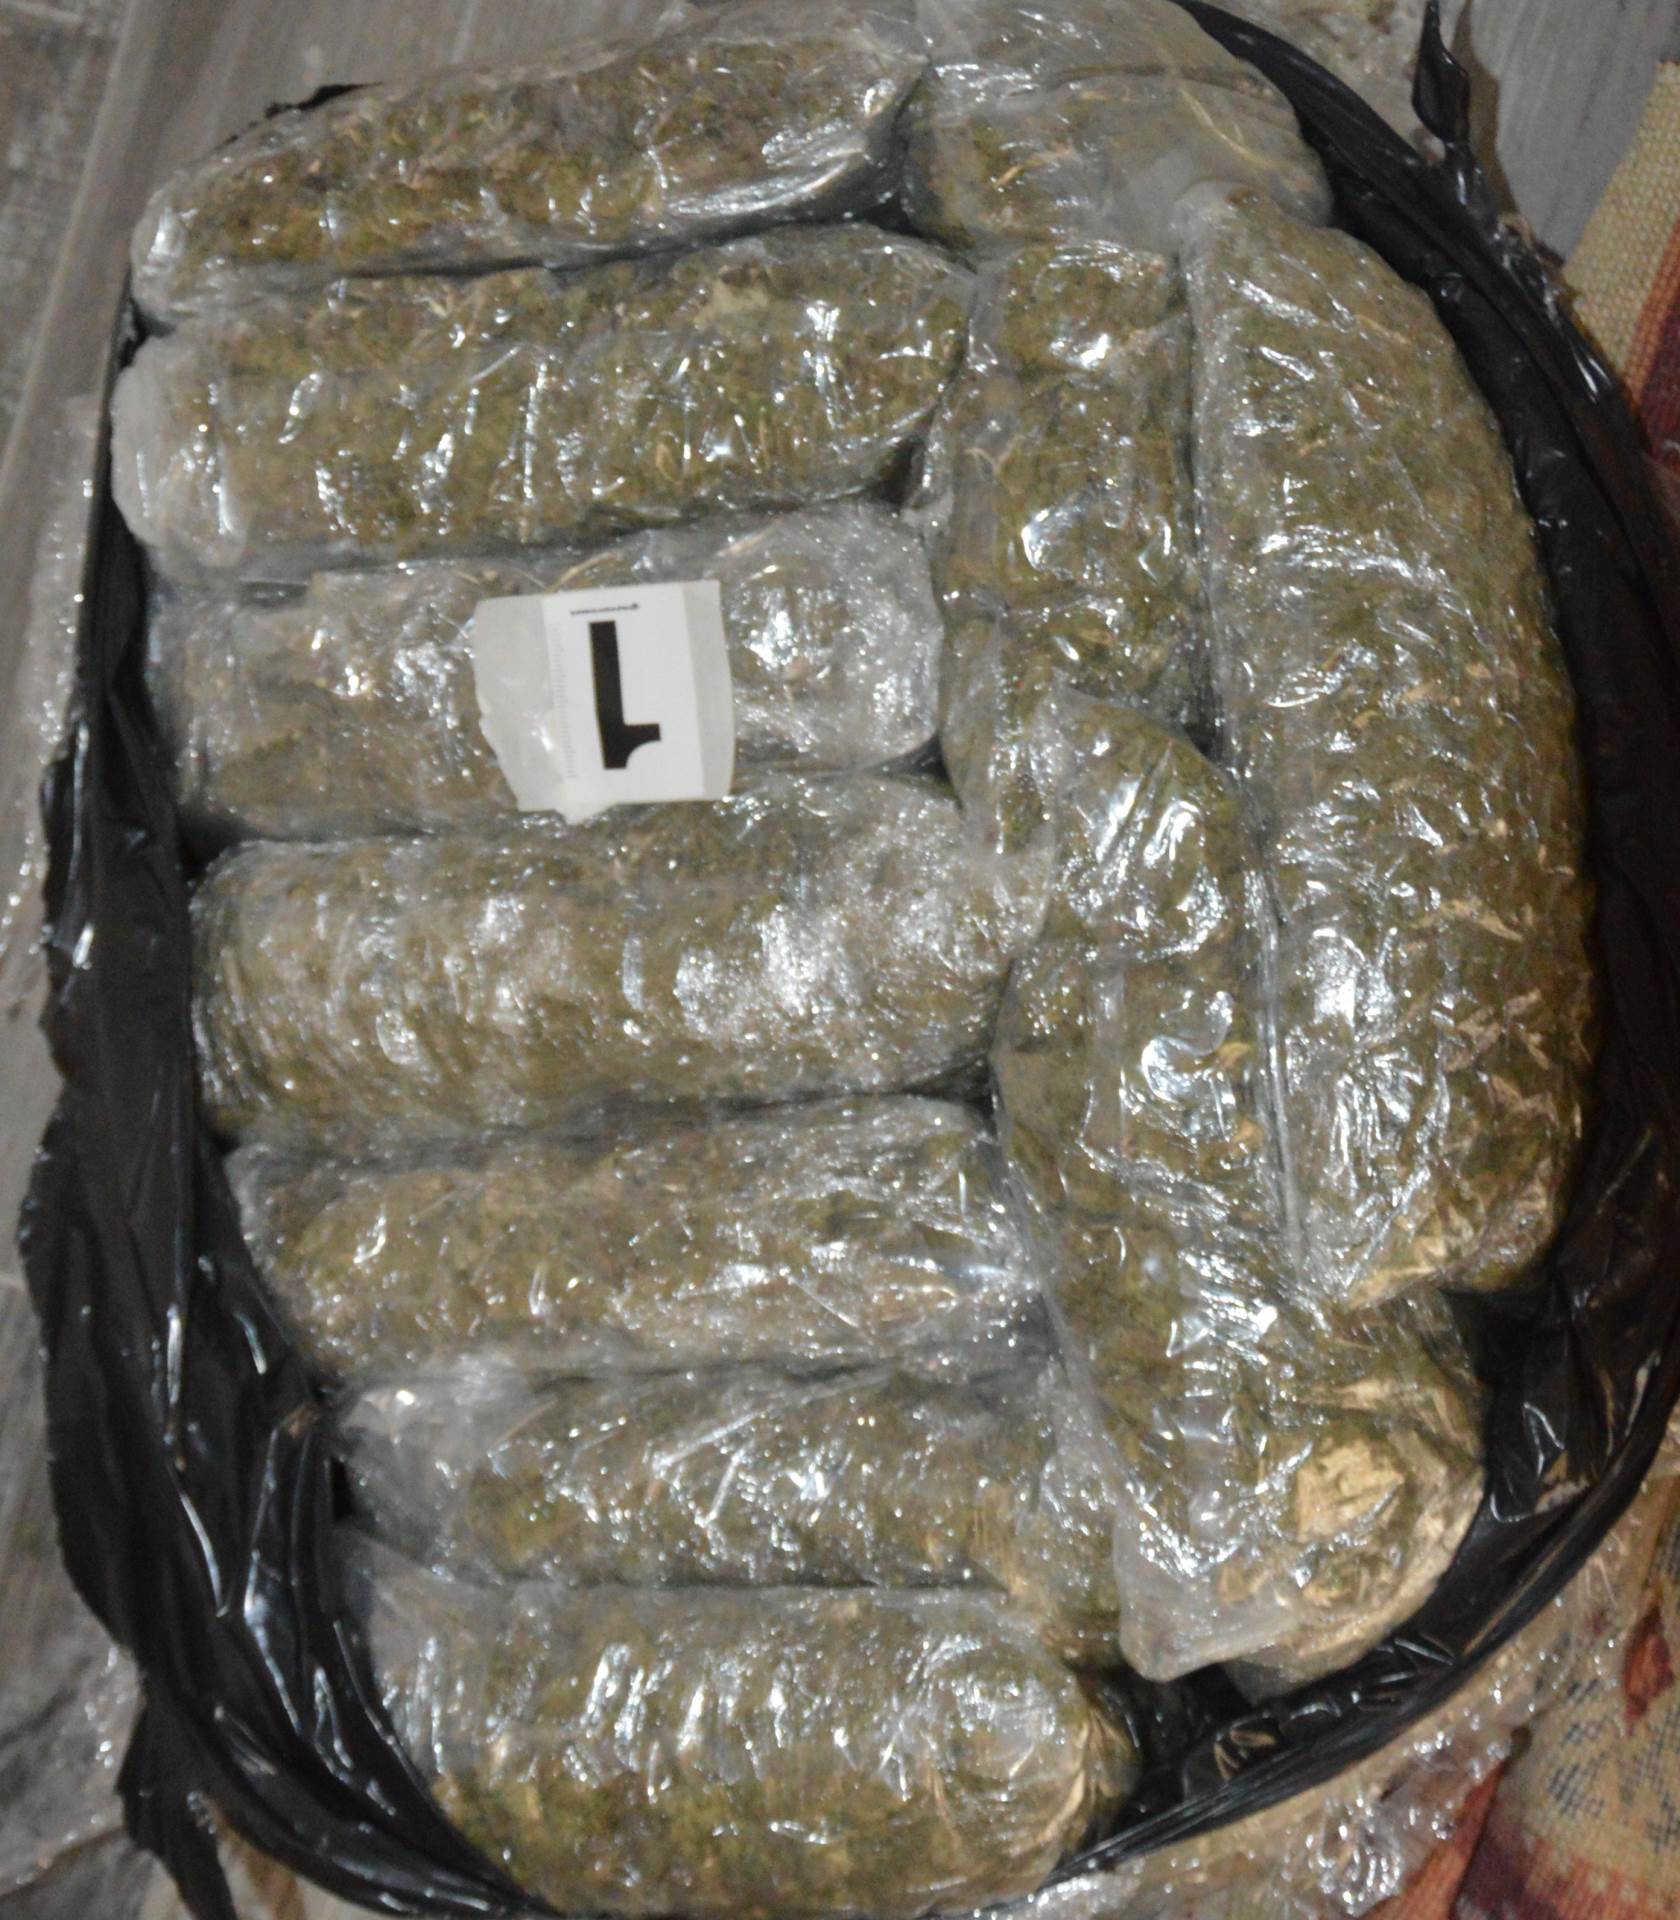  Pronađeno 11 kilograma marihuane u kući: UHAPŠEN DRŽAVLJANIN BiH 